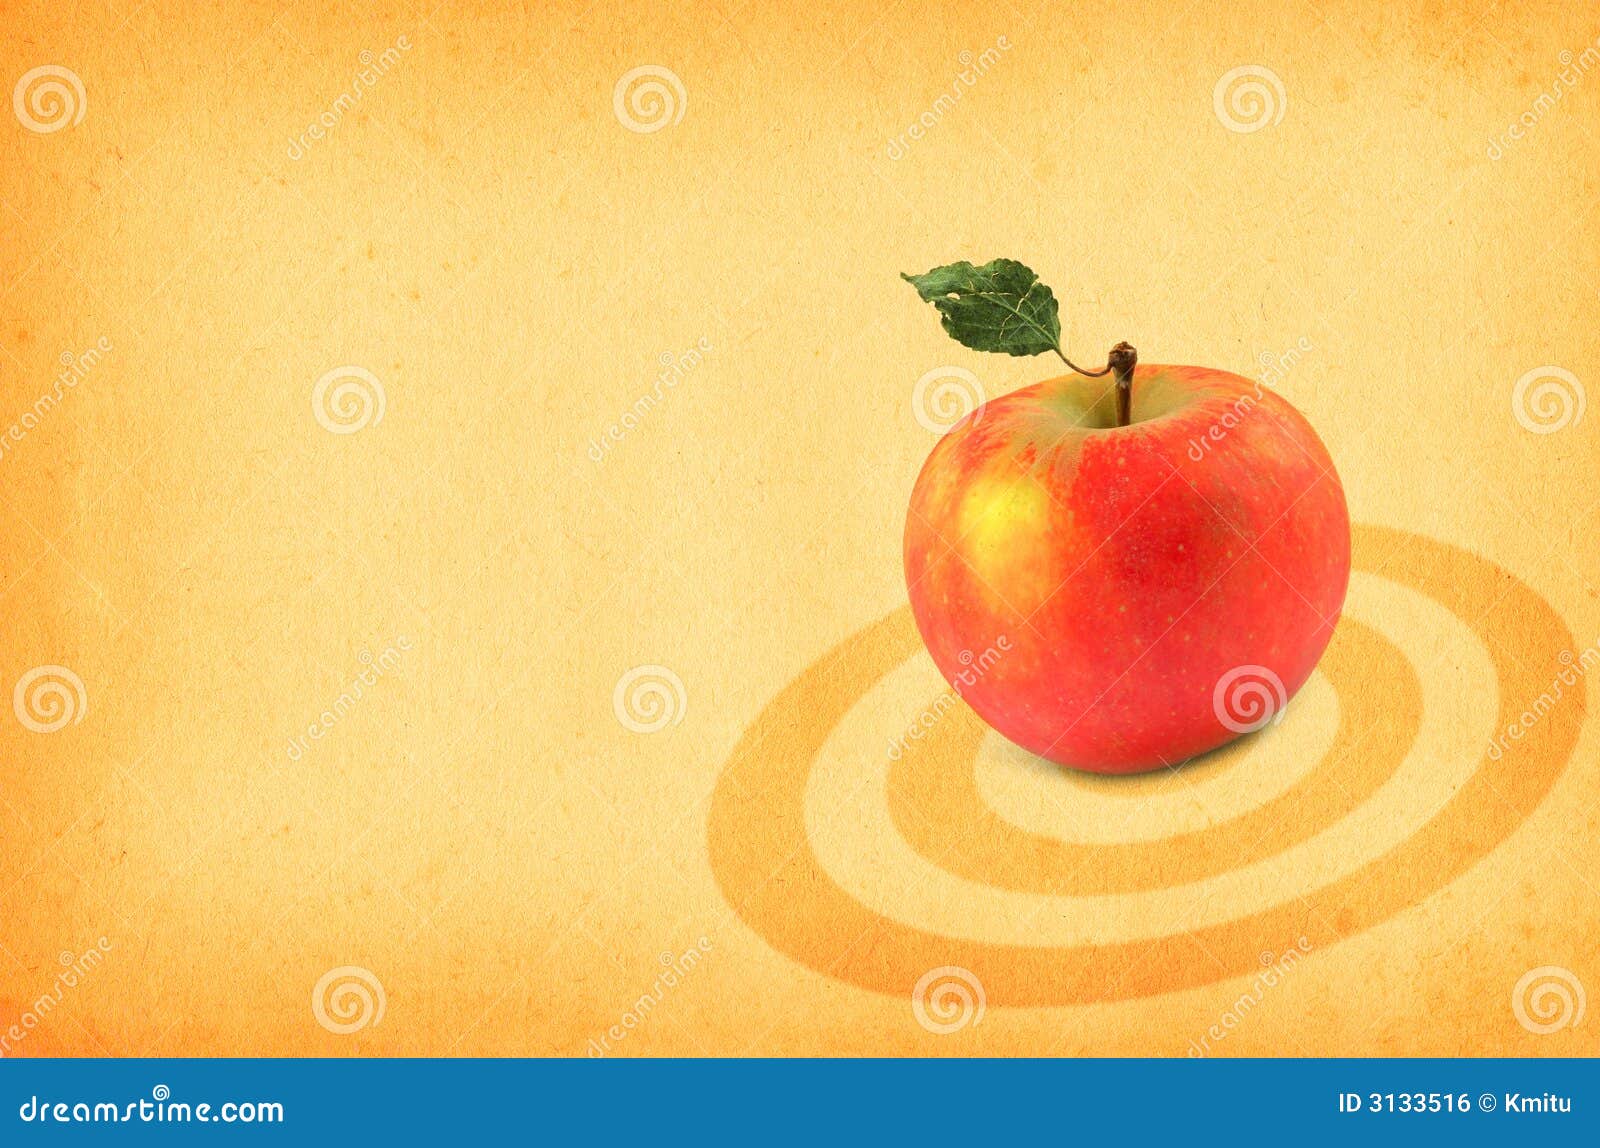 Red Apples Wallpaper 4K Dew Drops Water drops Pair 4921